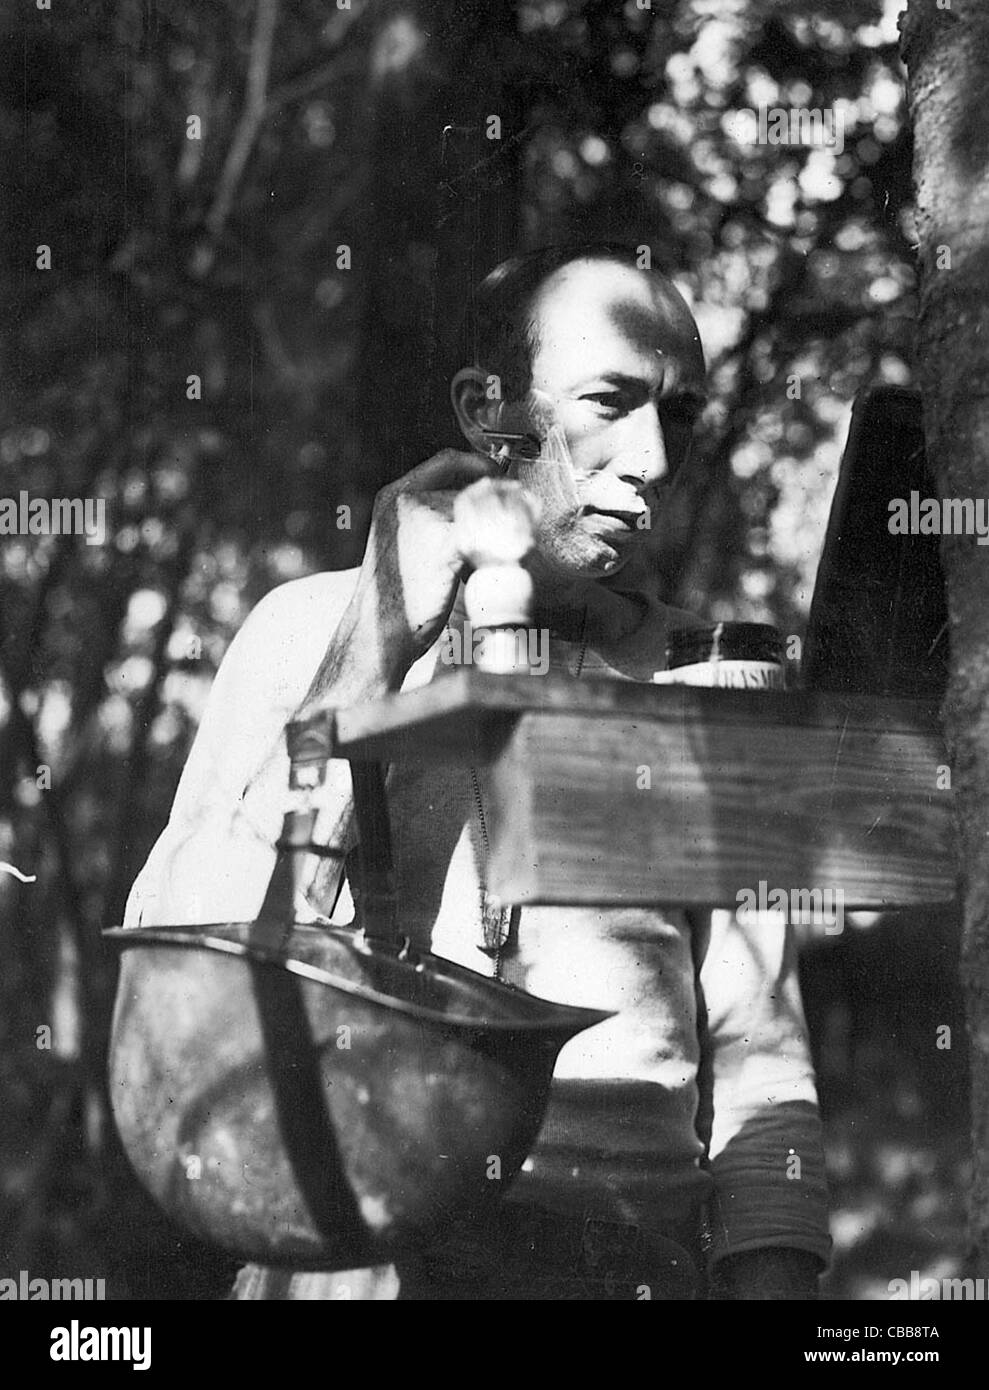 Ablutions. Un soldat se rase à l'aide de son casque comme un bol pendant le service dans une Europe dévastée par la guerre WW11 Banque D'Images